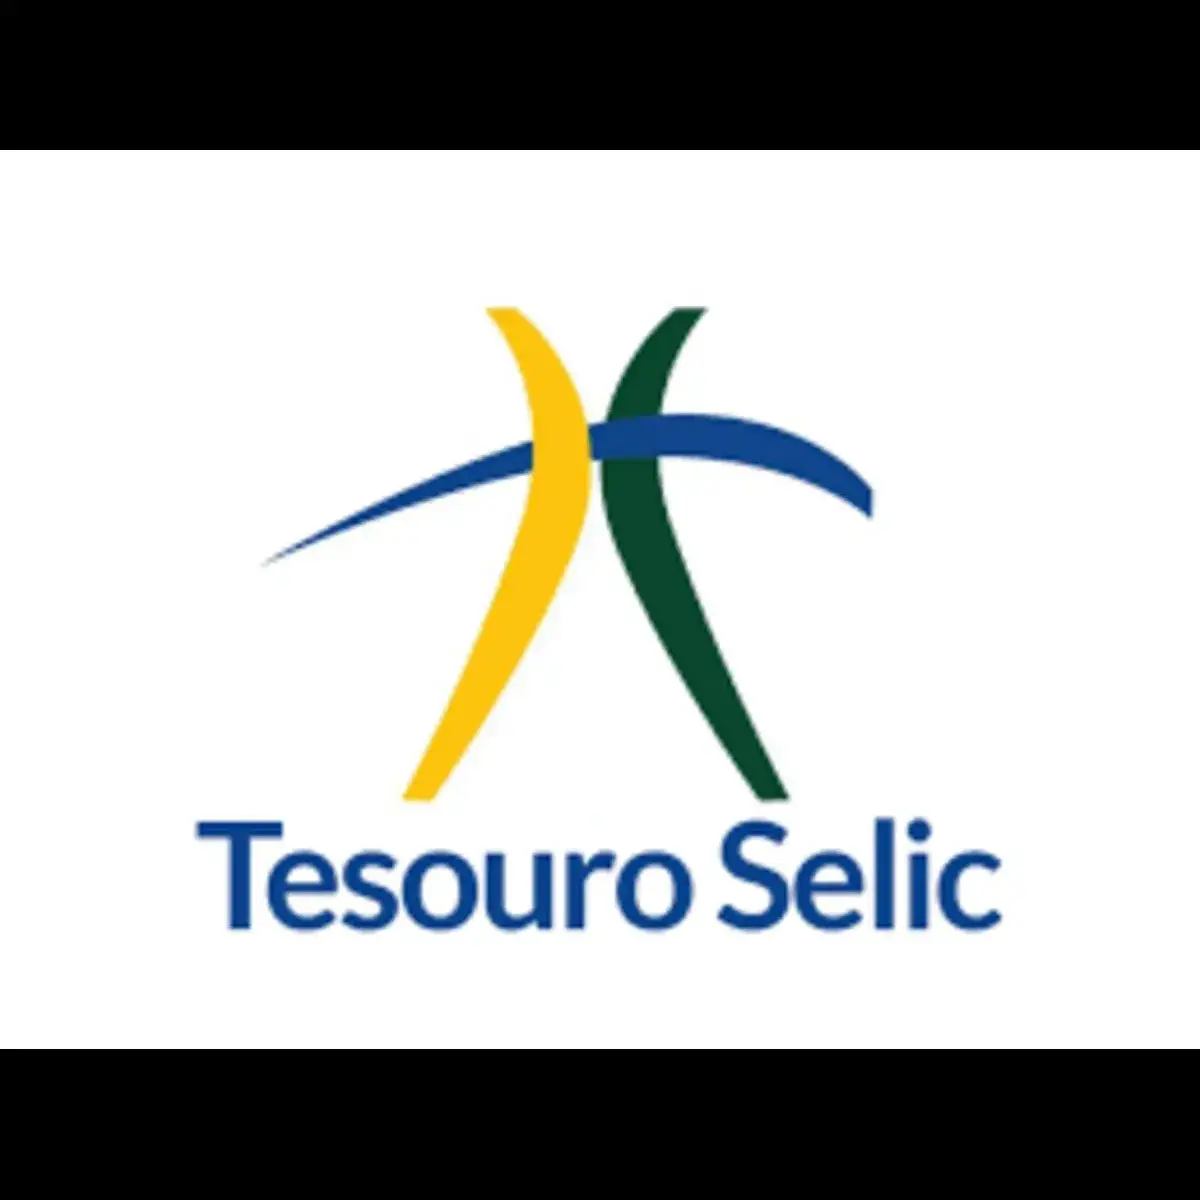 Tesouro Selic